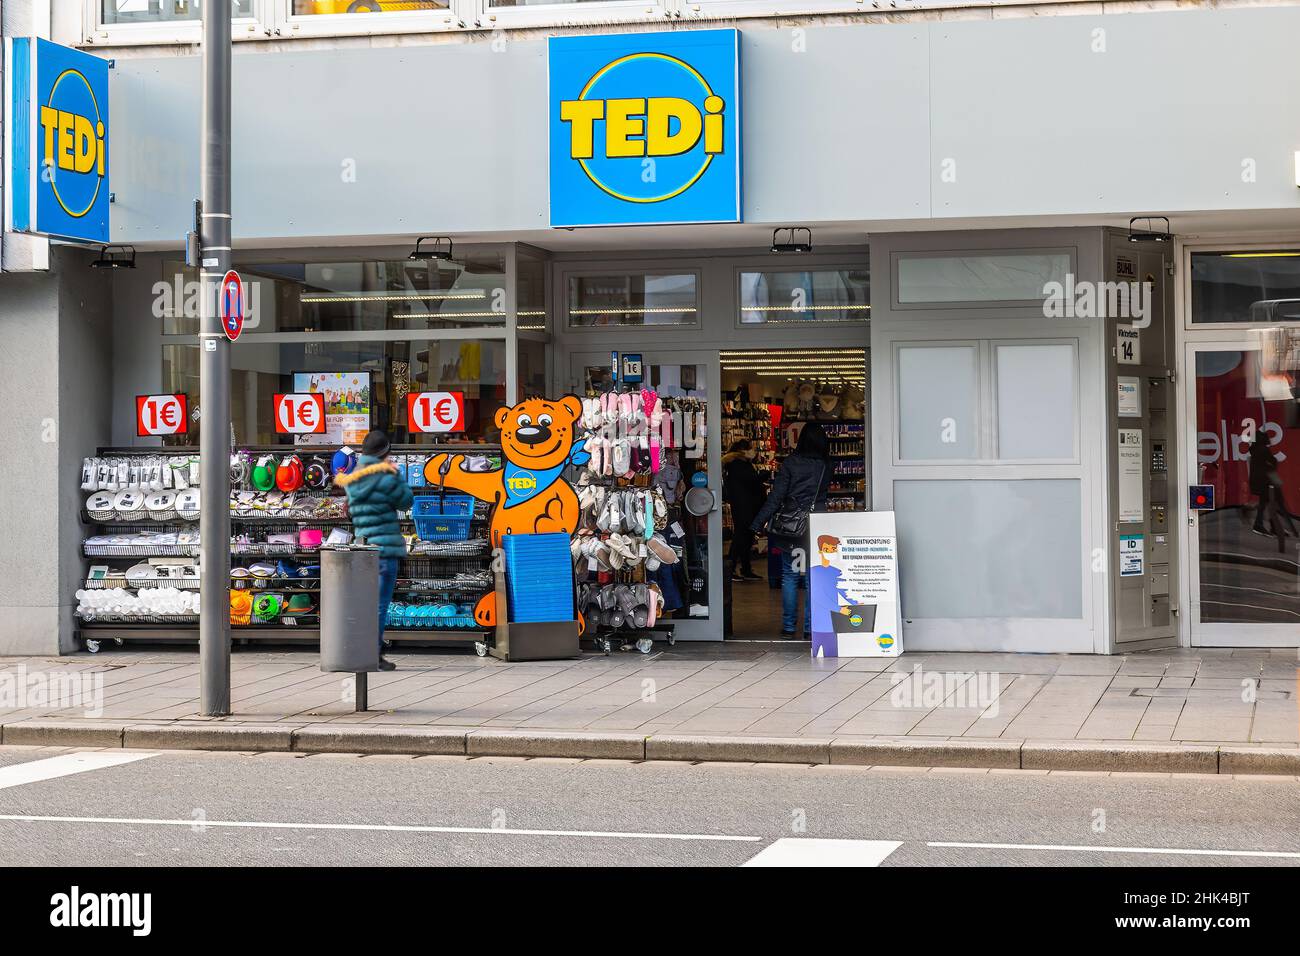 Vor dem örtlichen Tedi-Laden. Tedi ist eine deutsche Kaufhauskette für billige Produkte Stockfoto